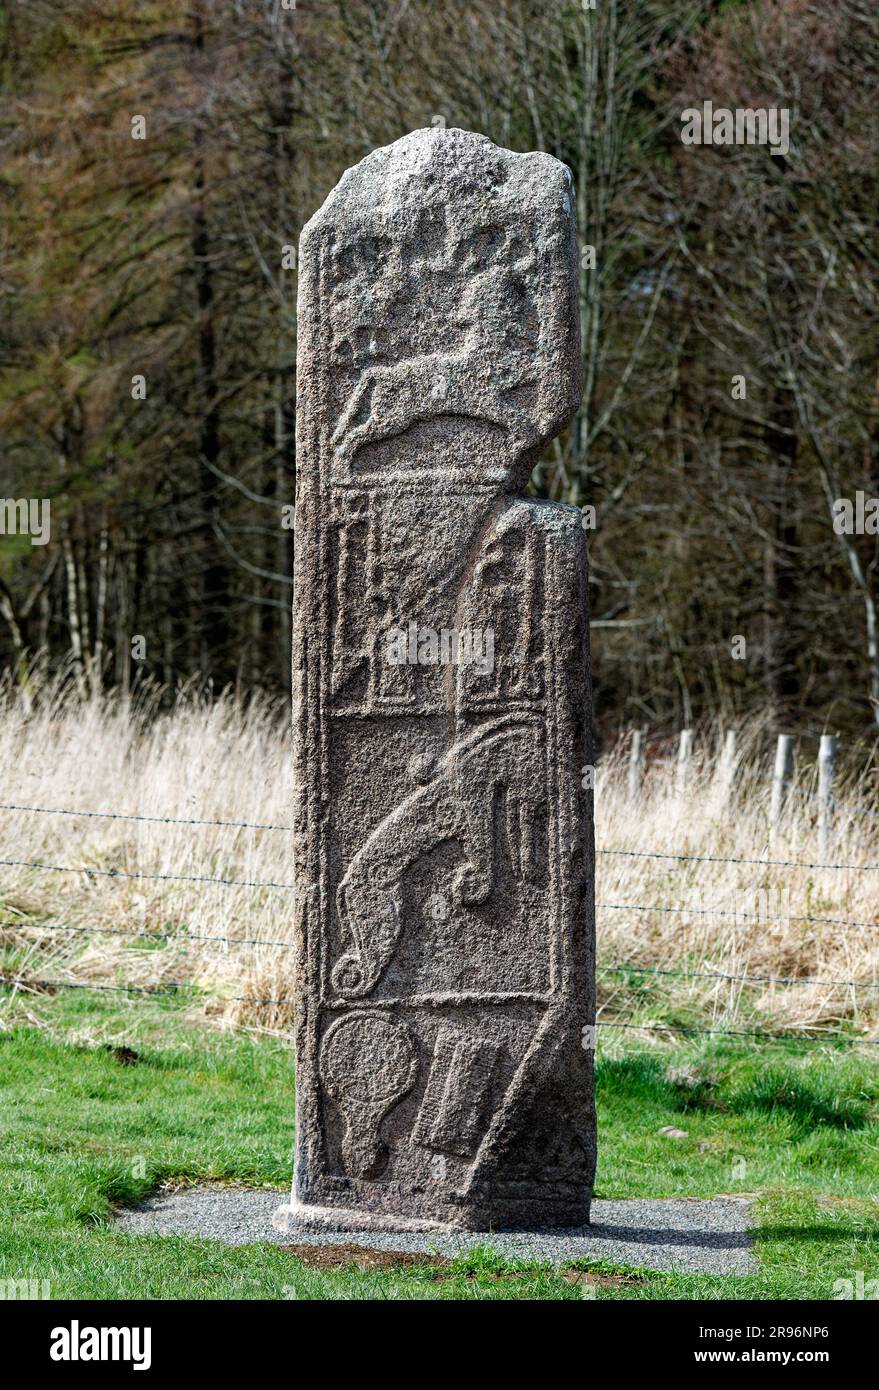 La Pierre de Maiden. Pictush 9th C. plaque de croix chrétienne. Face est, près de la Chapelle de Garioch, région de Grampian, Écosse Banque D'Images